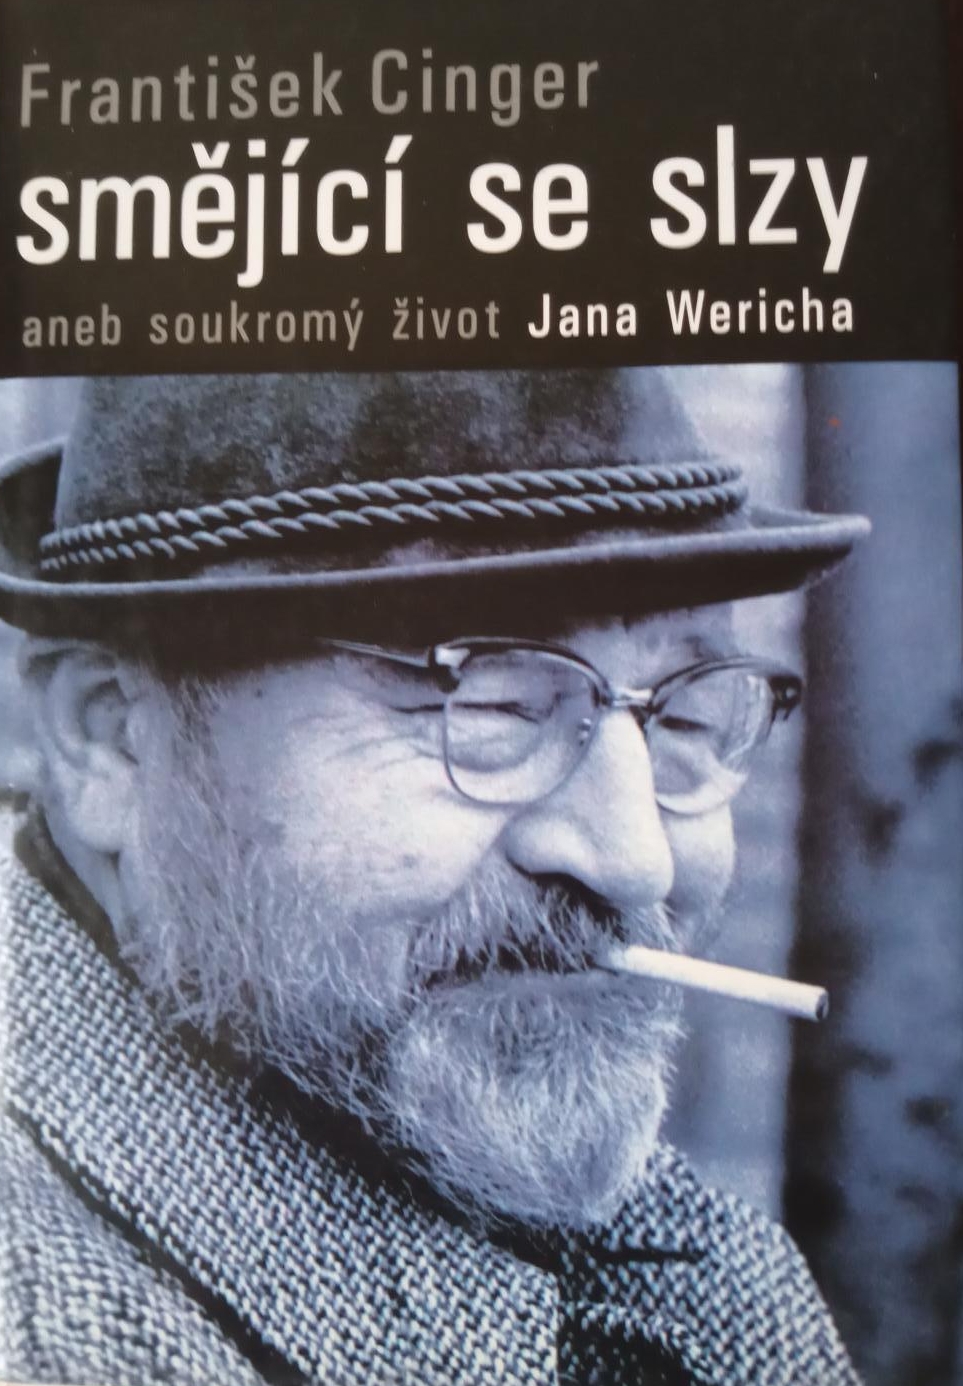 Smějící se slzy aneb soukromý život Jana Wericha